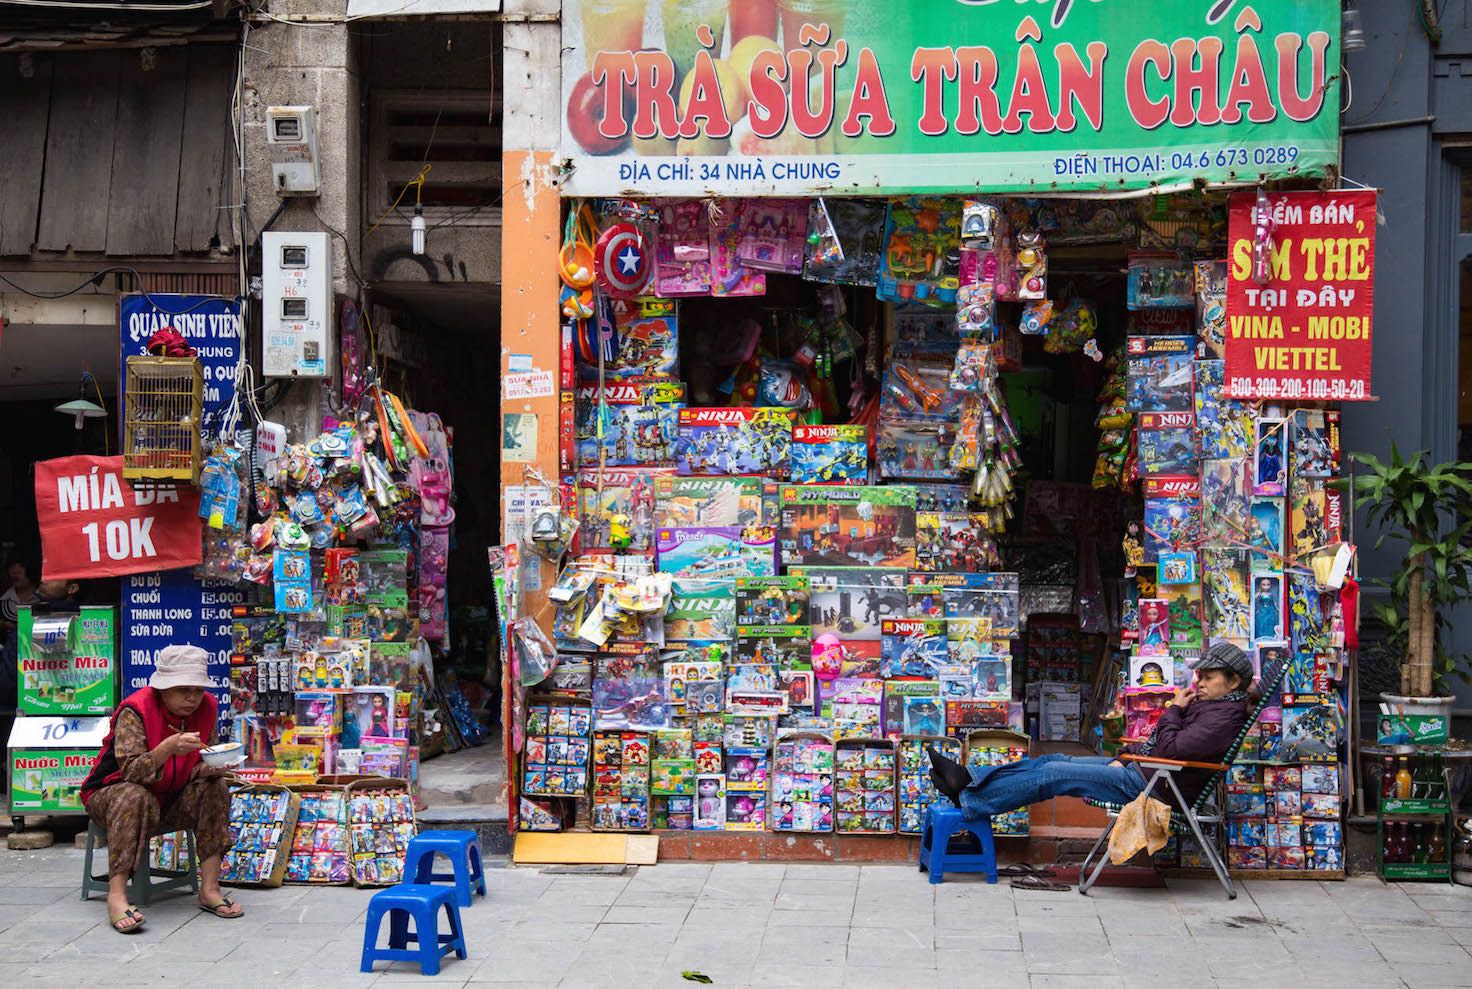 Hanoi-moments of yugen- Old Quarter Street